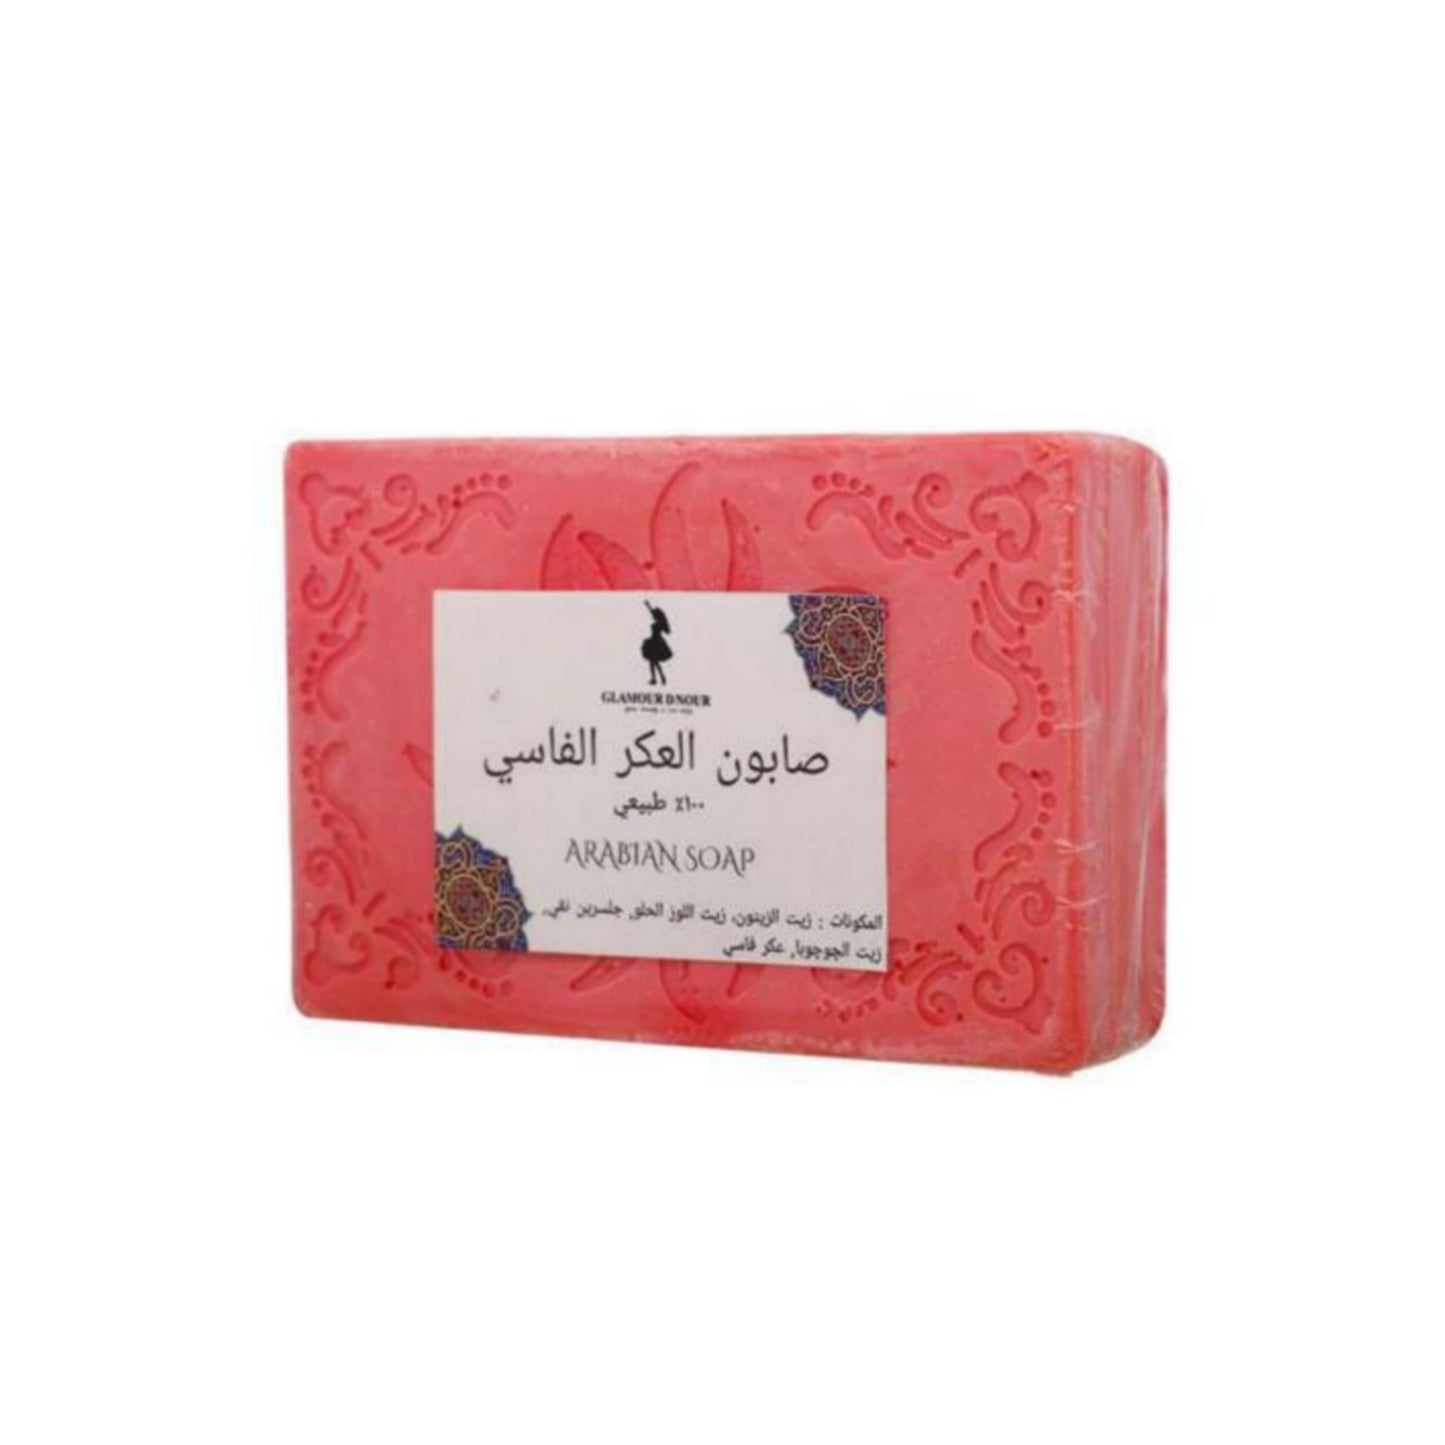 Aker Fassi soap